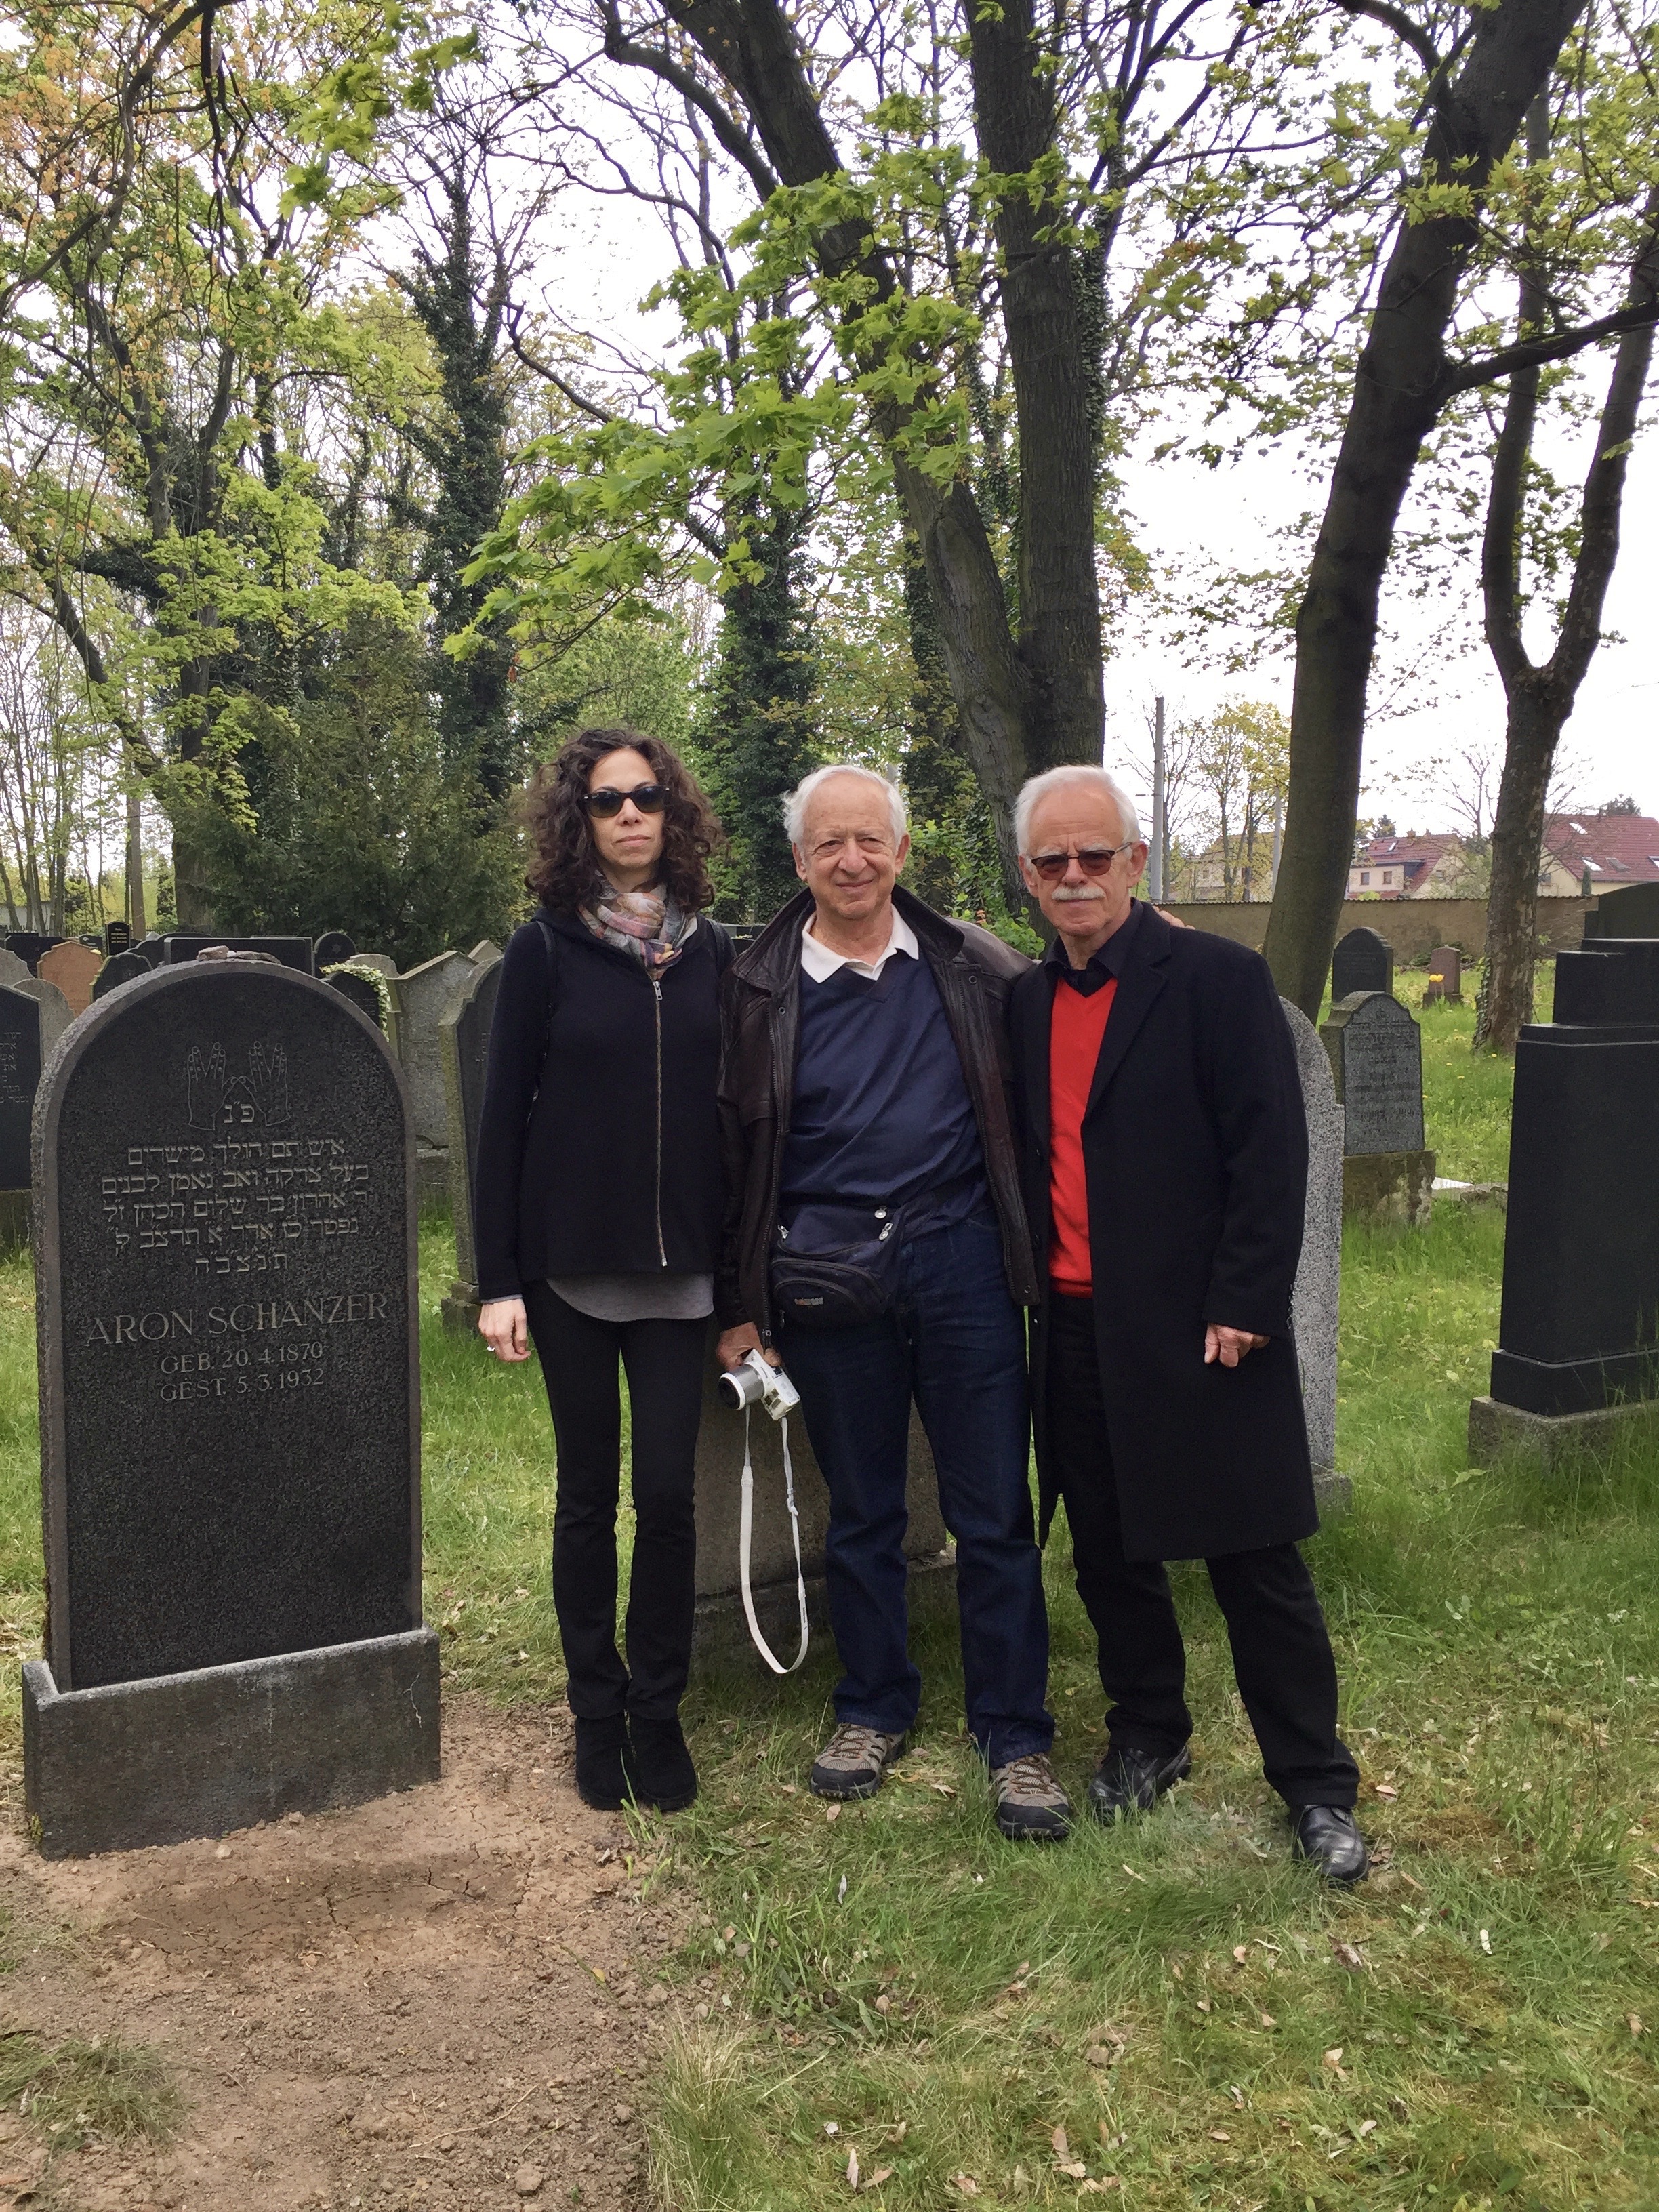 שלושה בני דודים, בבית העלמין היהודי בלייפציג. מימין לשמאל: יורגן קולנר, הארי שנצר ואיווט פינטר